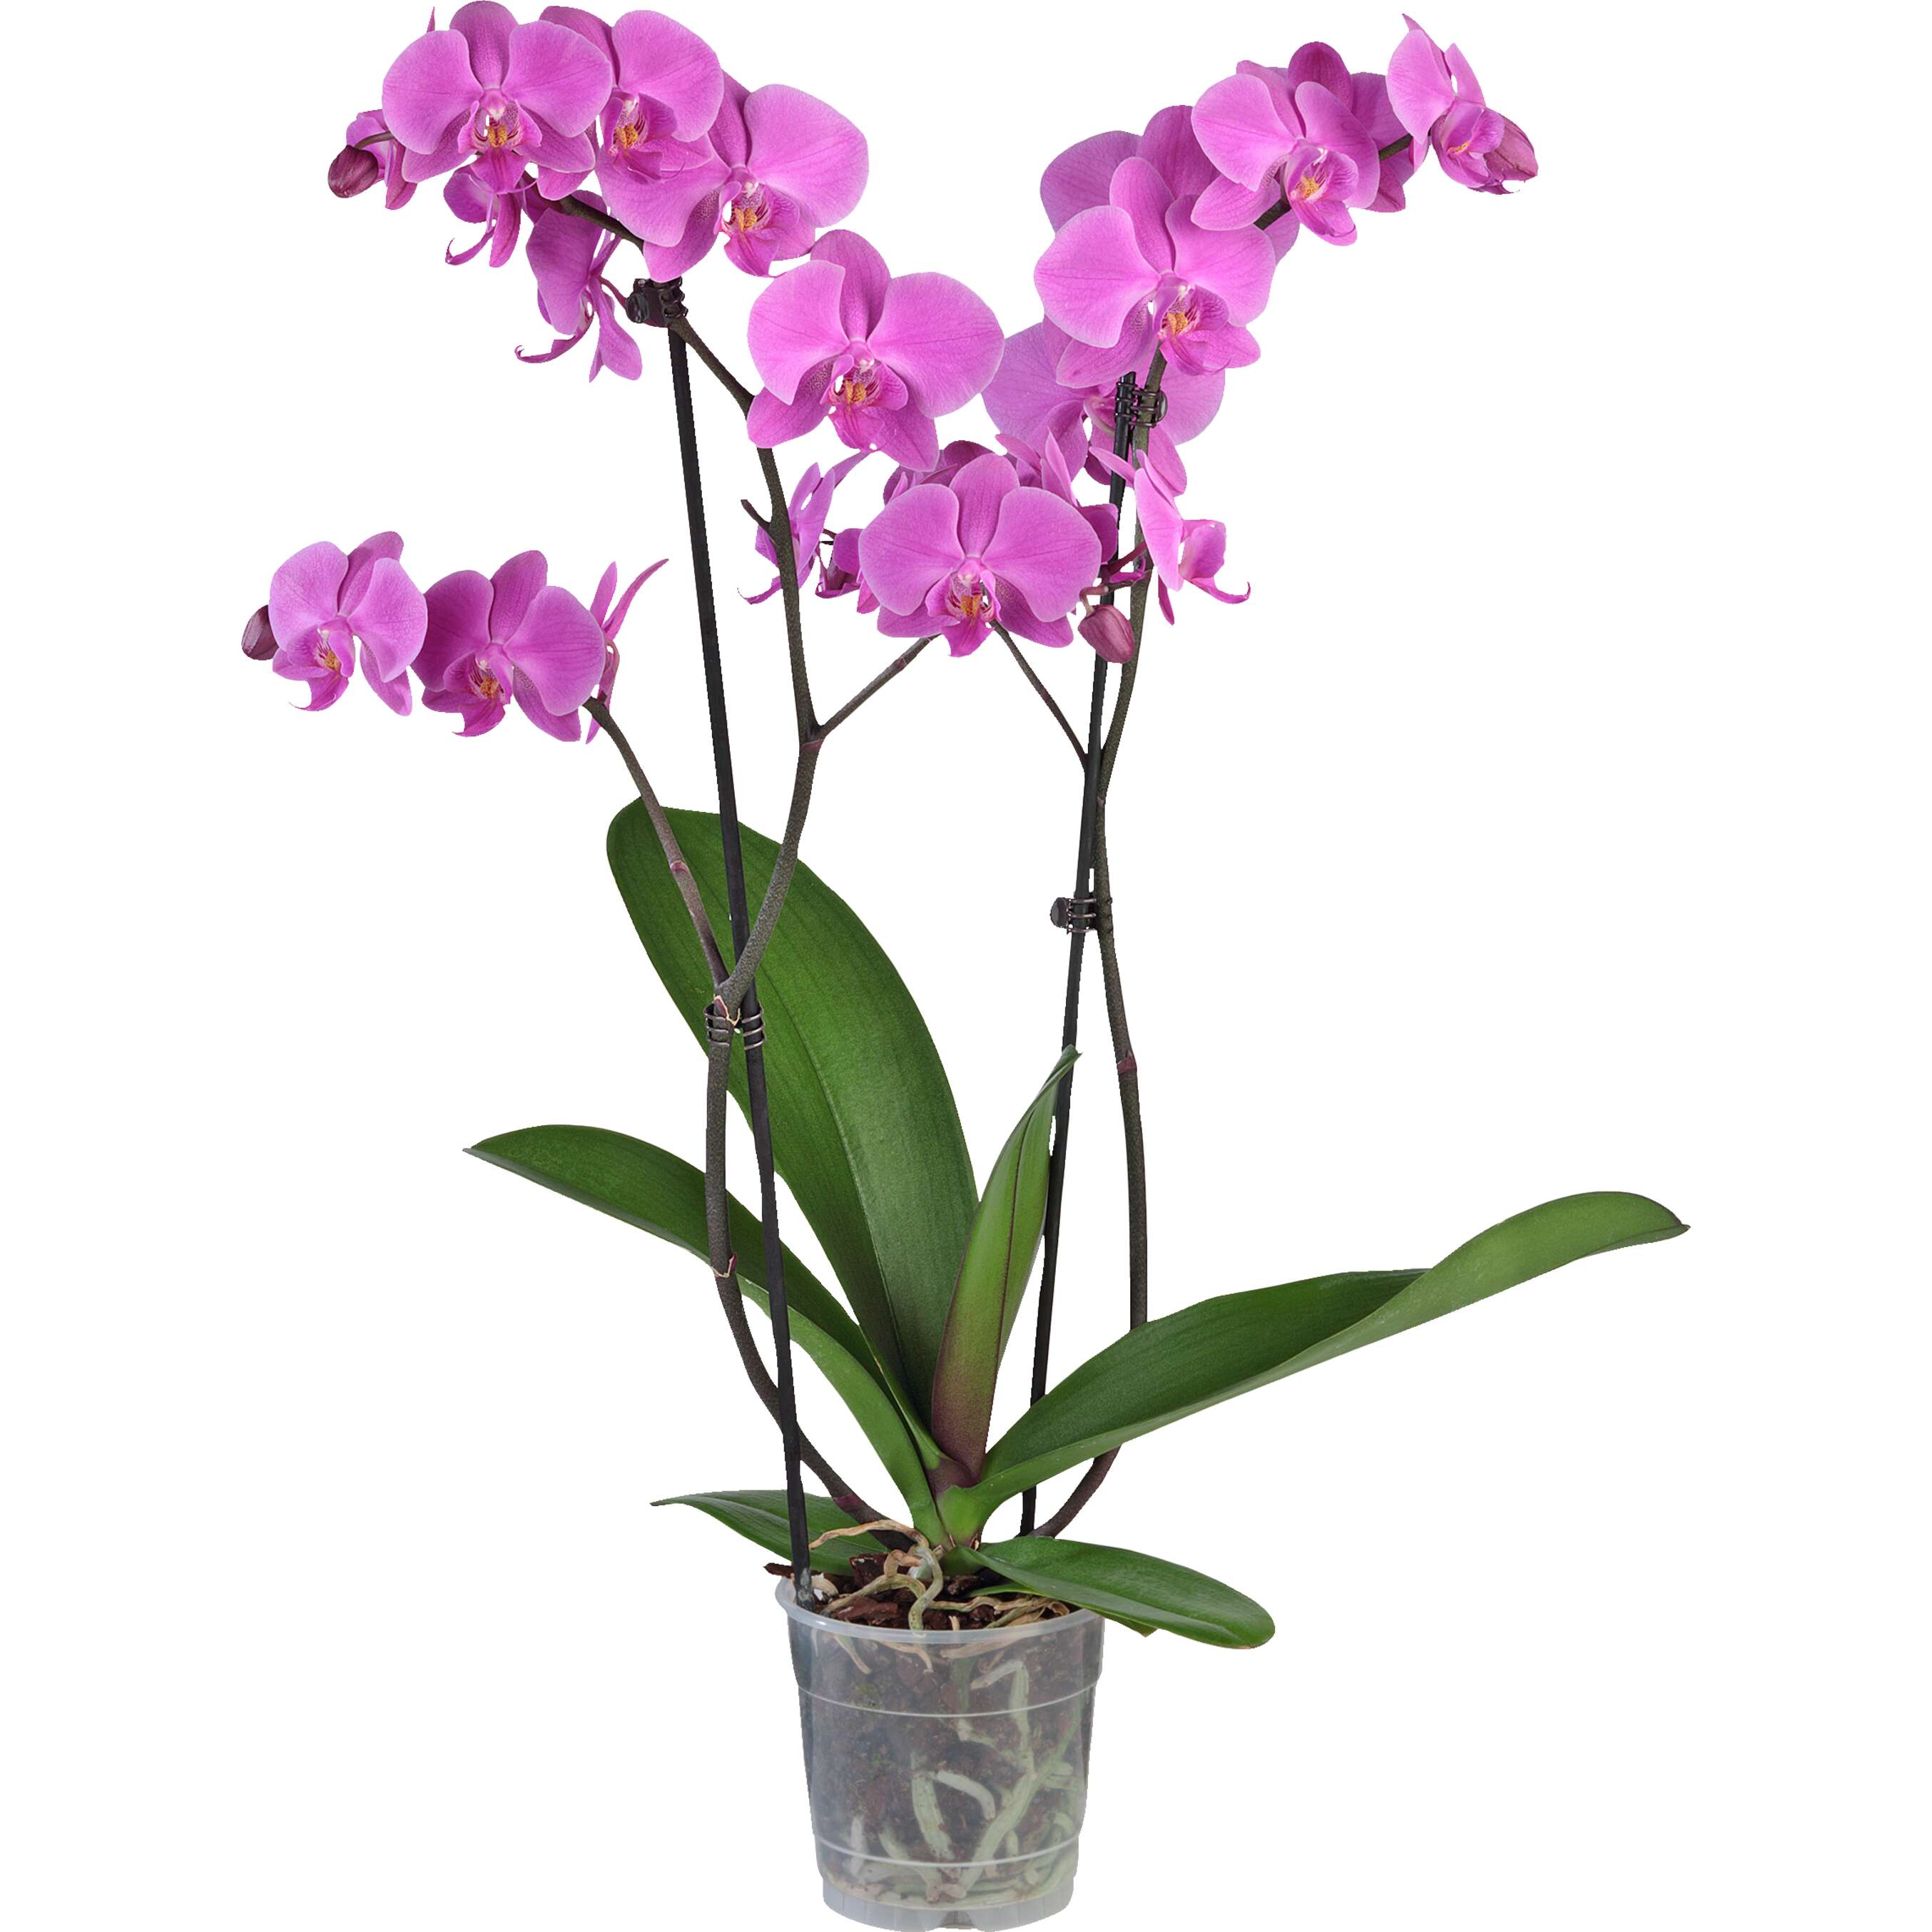 Zobrazit nabídku Orchidea-Phalaenopis 2výhony 